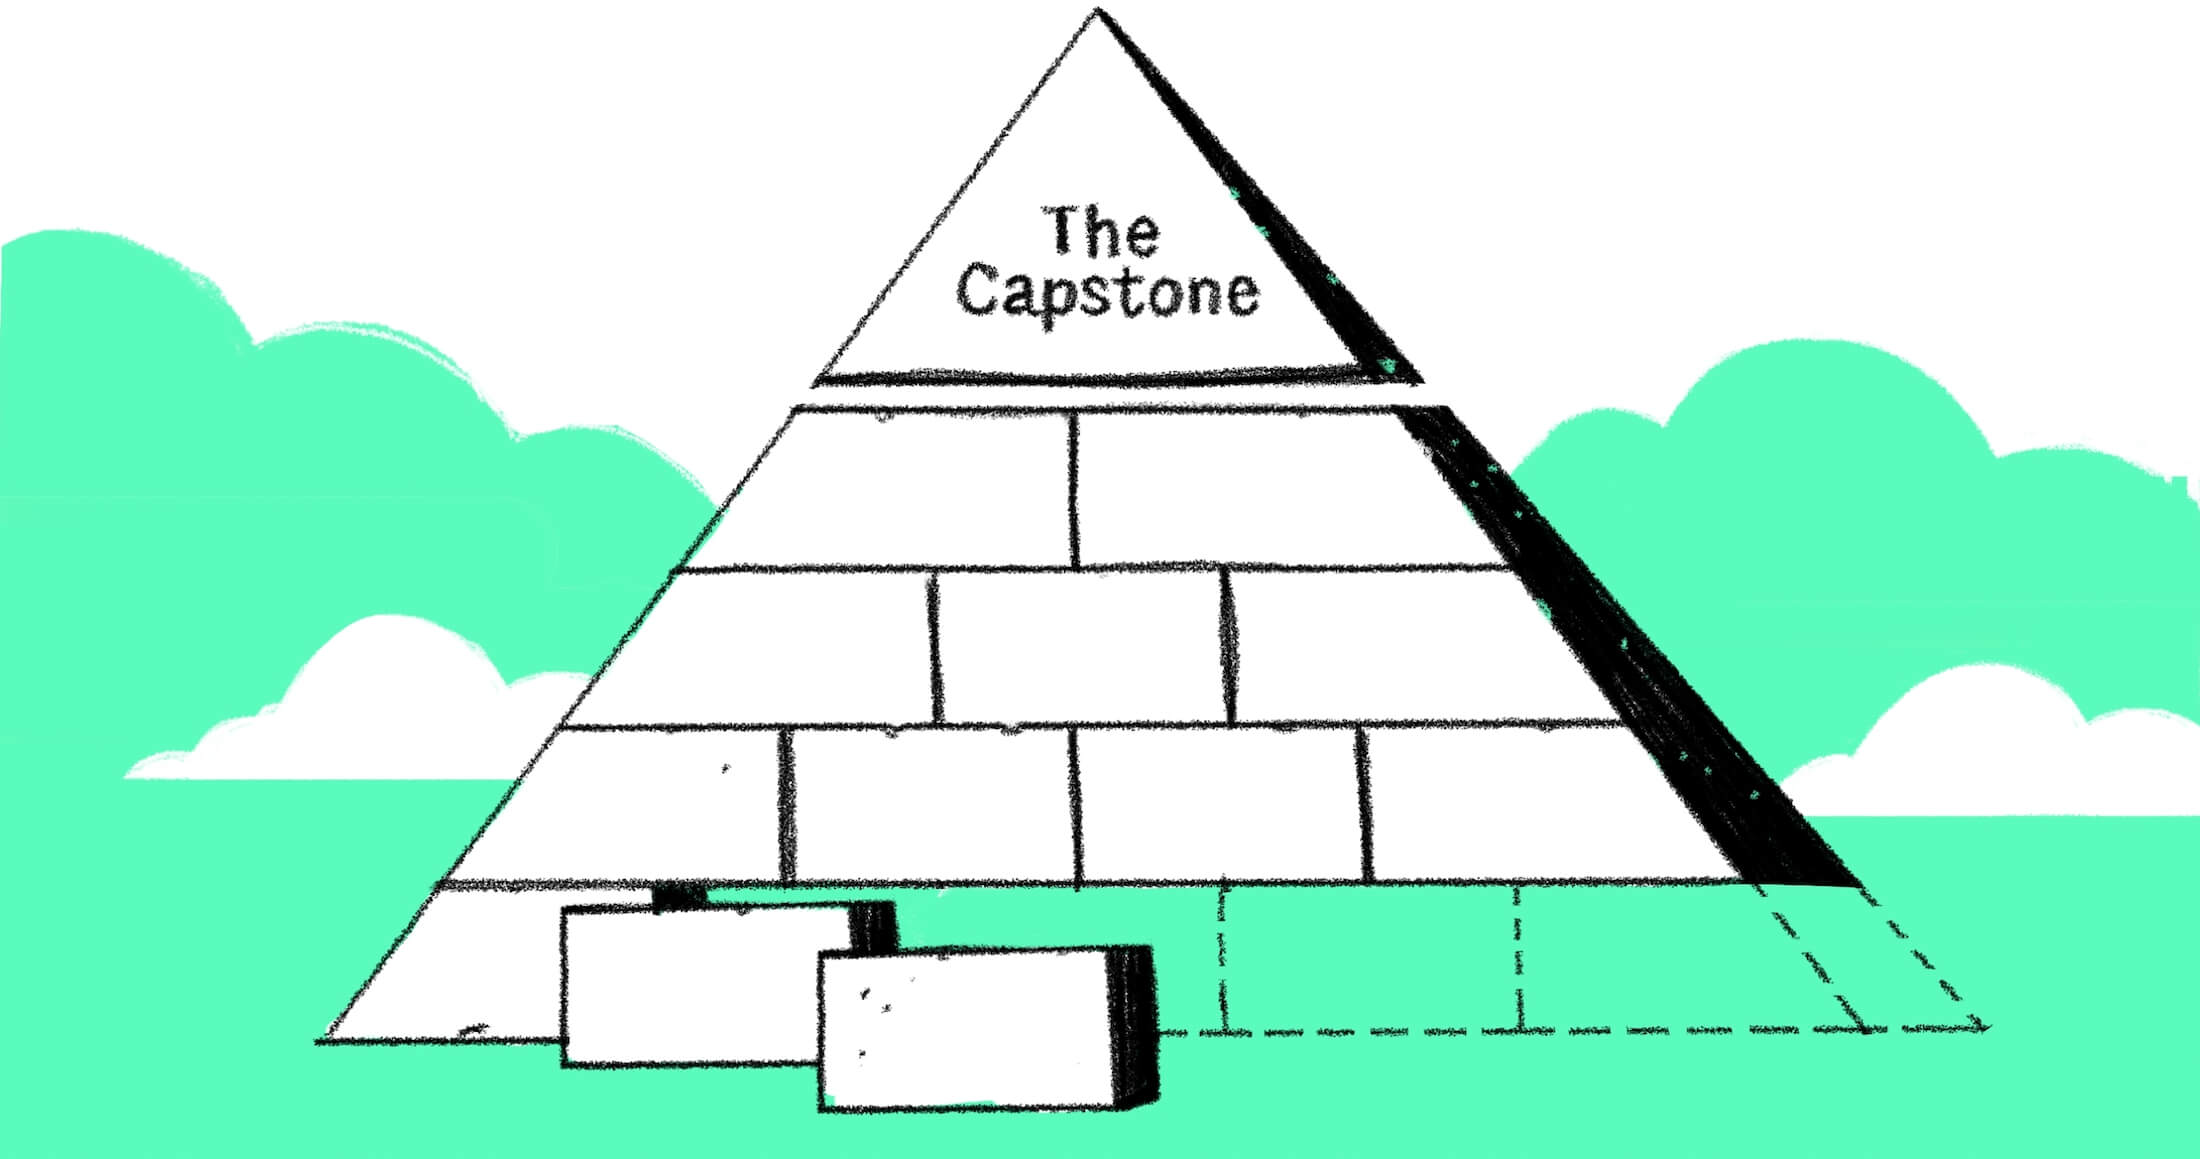 the capstone pyramid